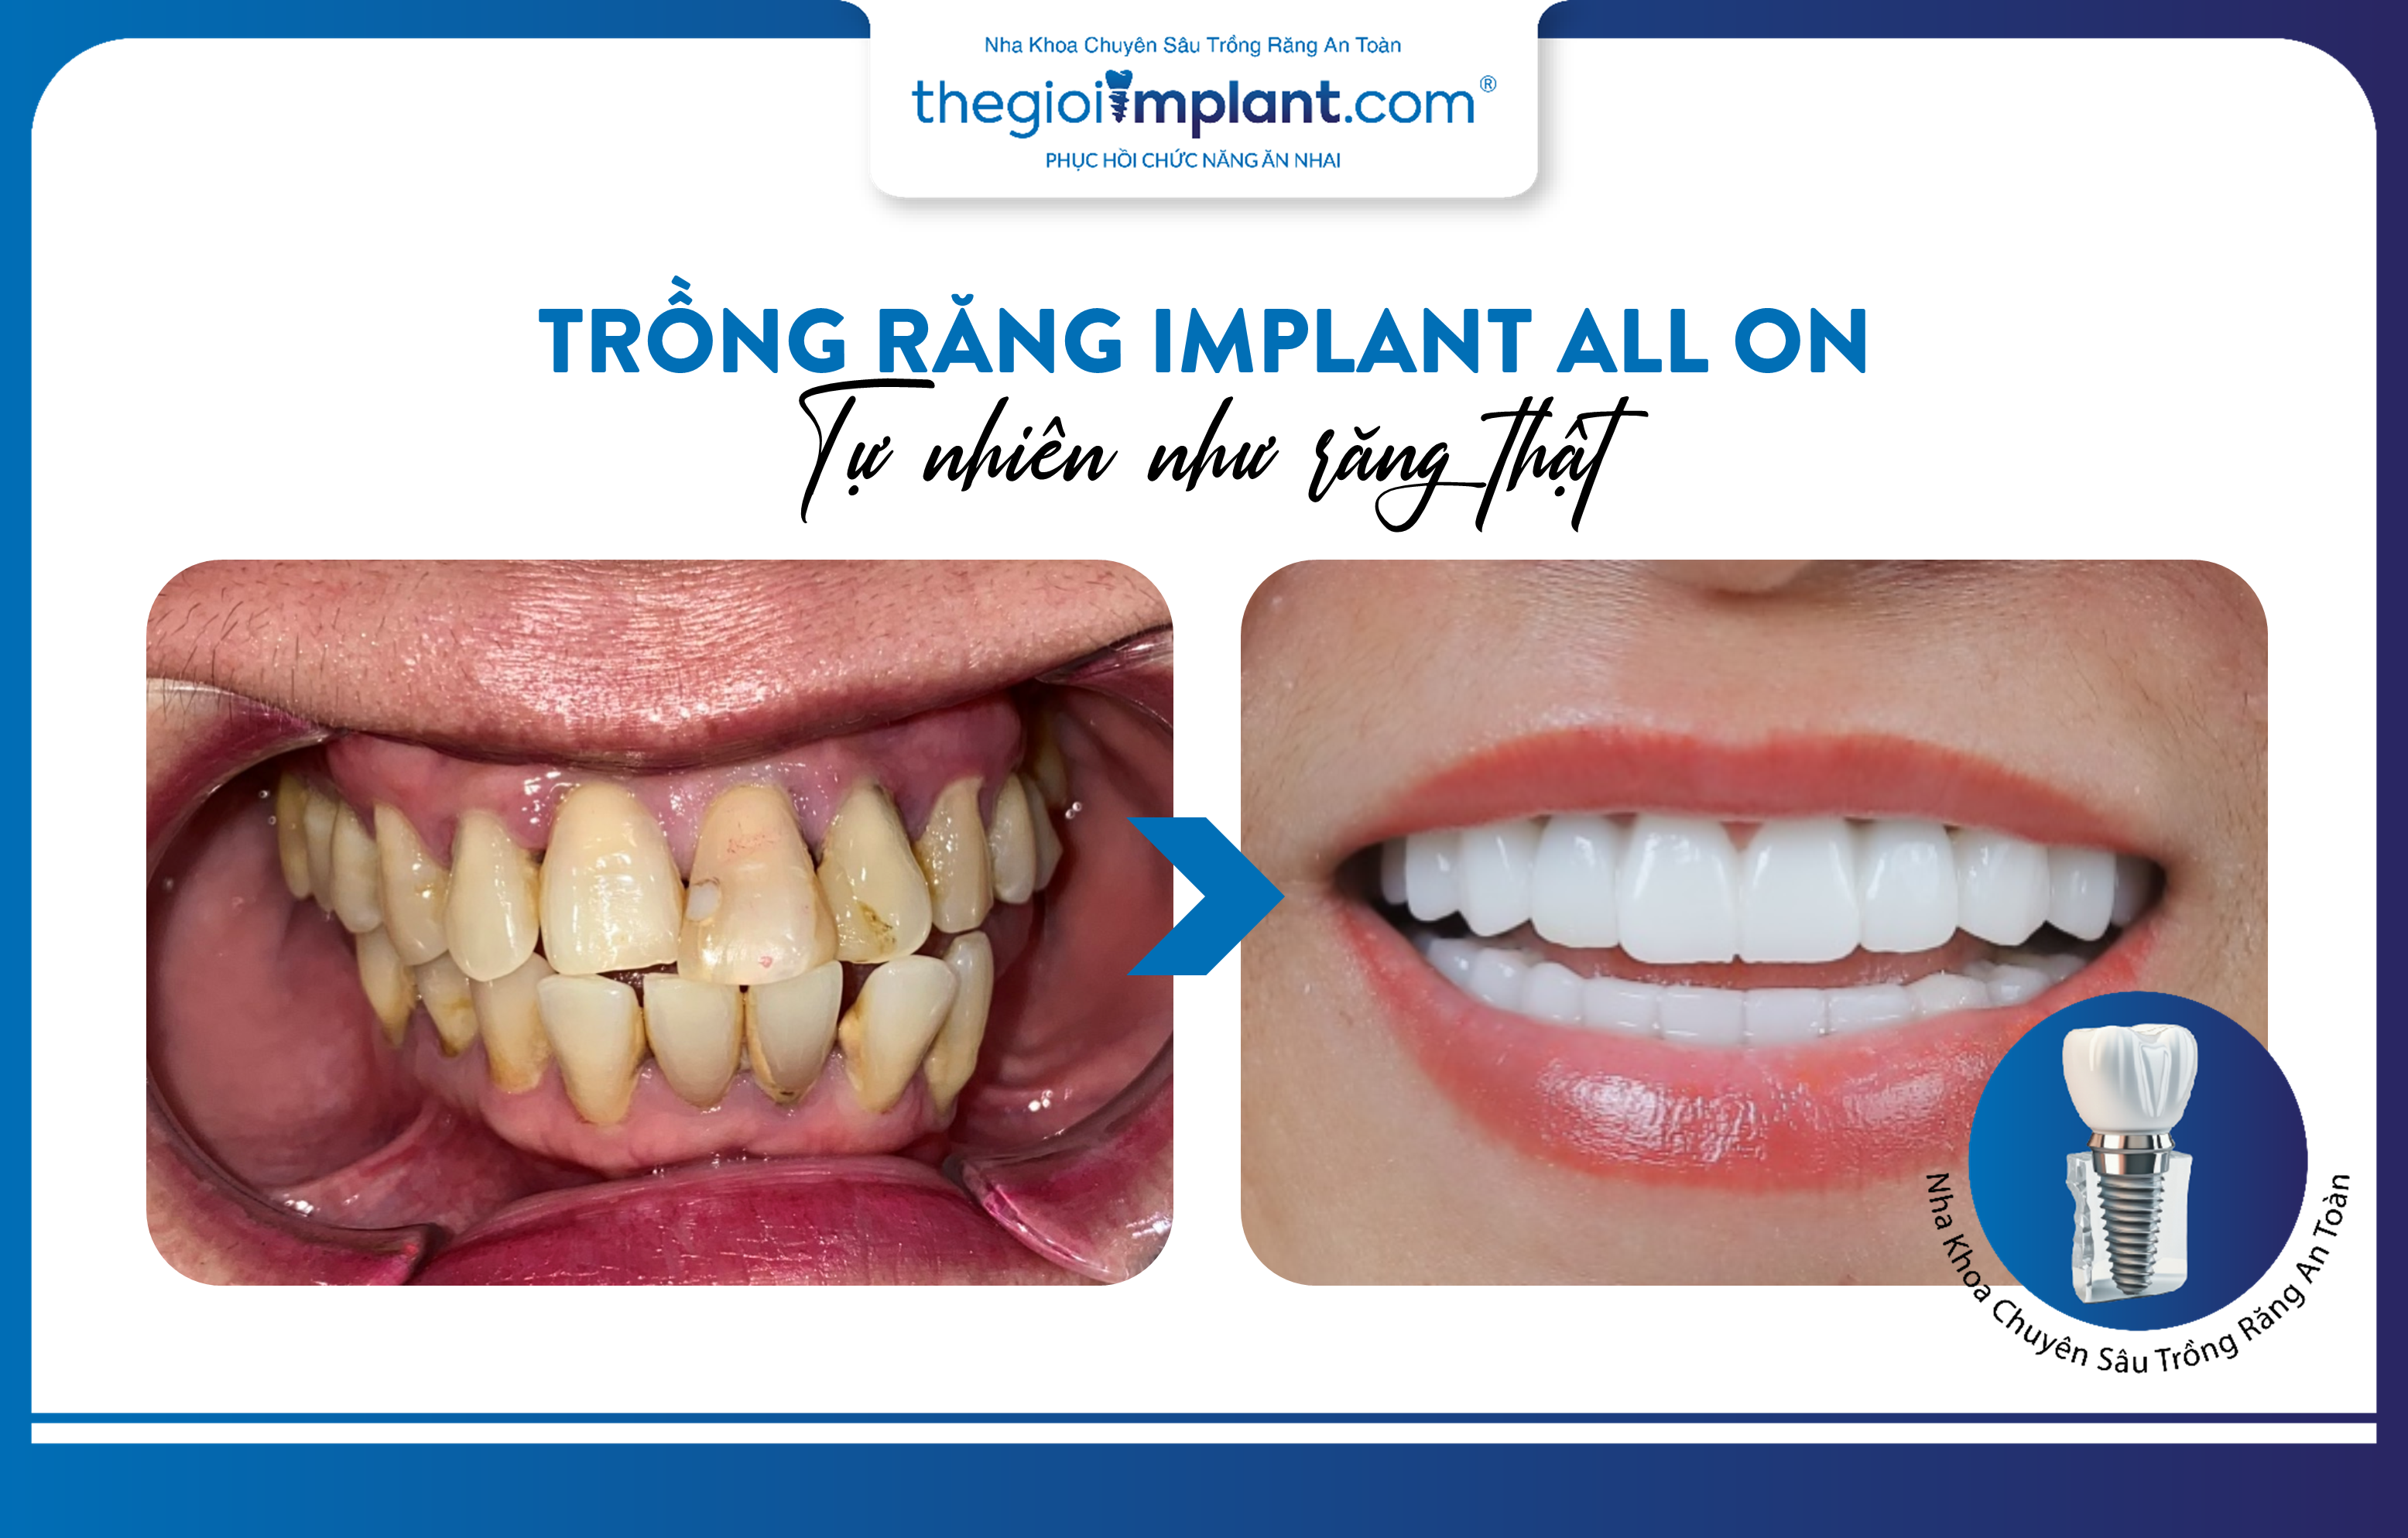 Trồng răng Implant toàn hàm All On: thẩm mỹ tự nhiên như răng thật